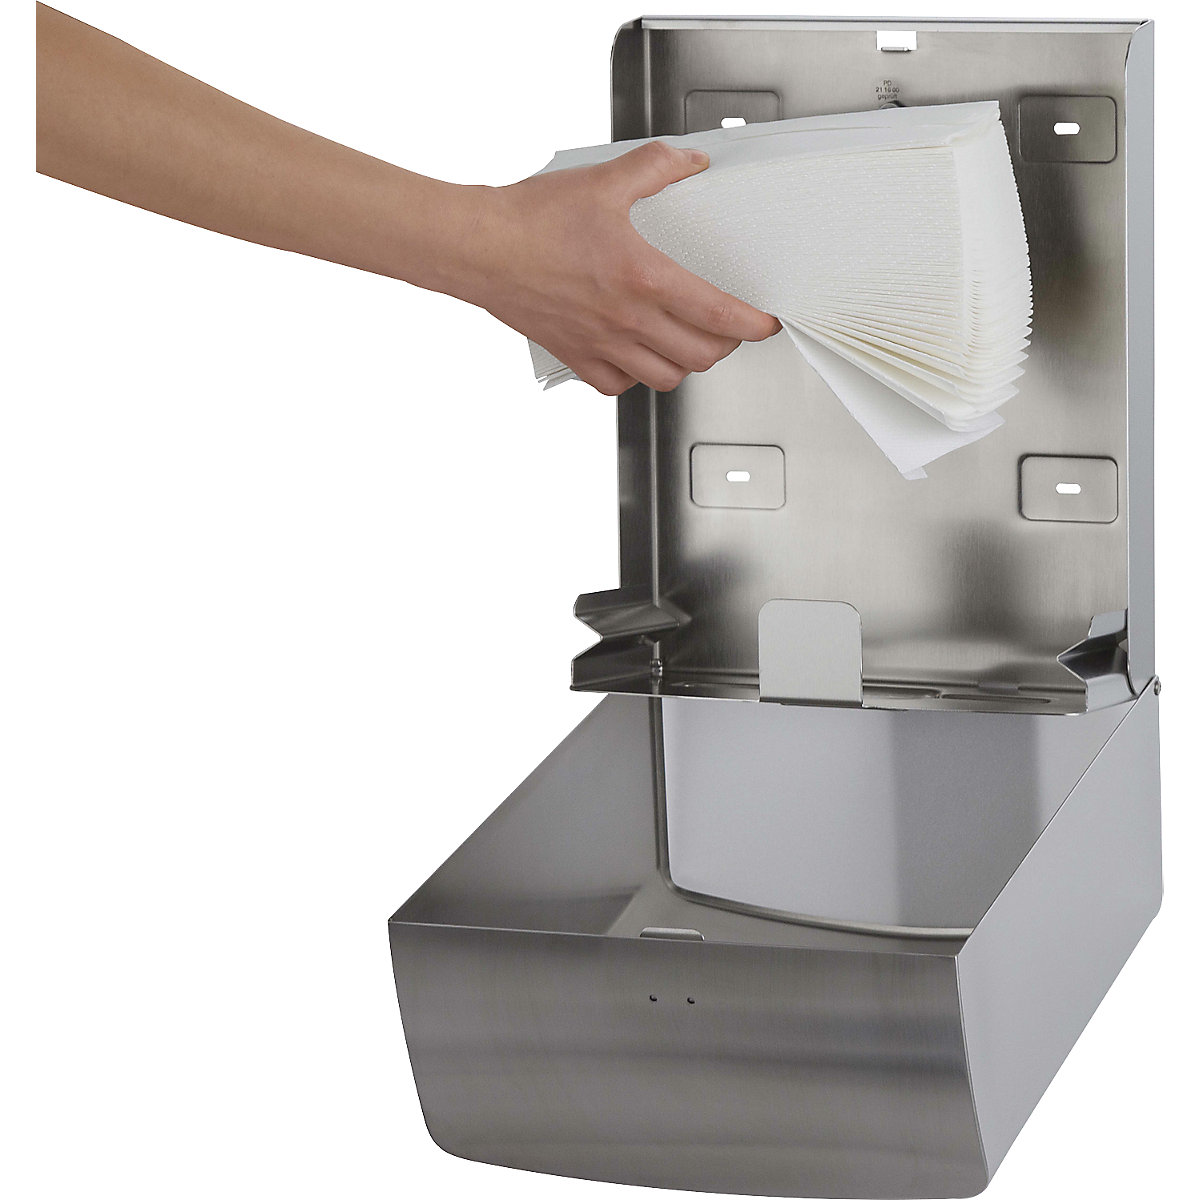 Dispenser in acciaio inox per salviettine di carta – AIR-WOLF (Foto prodotto 3)-2